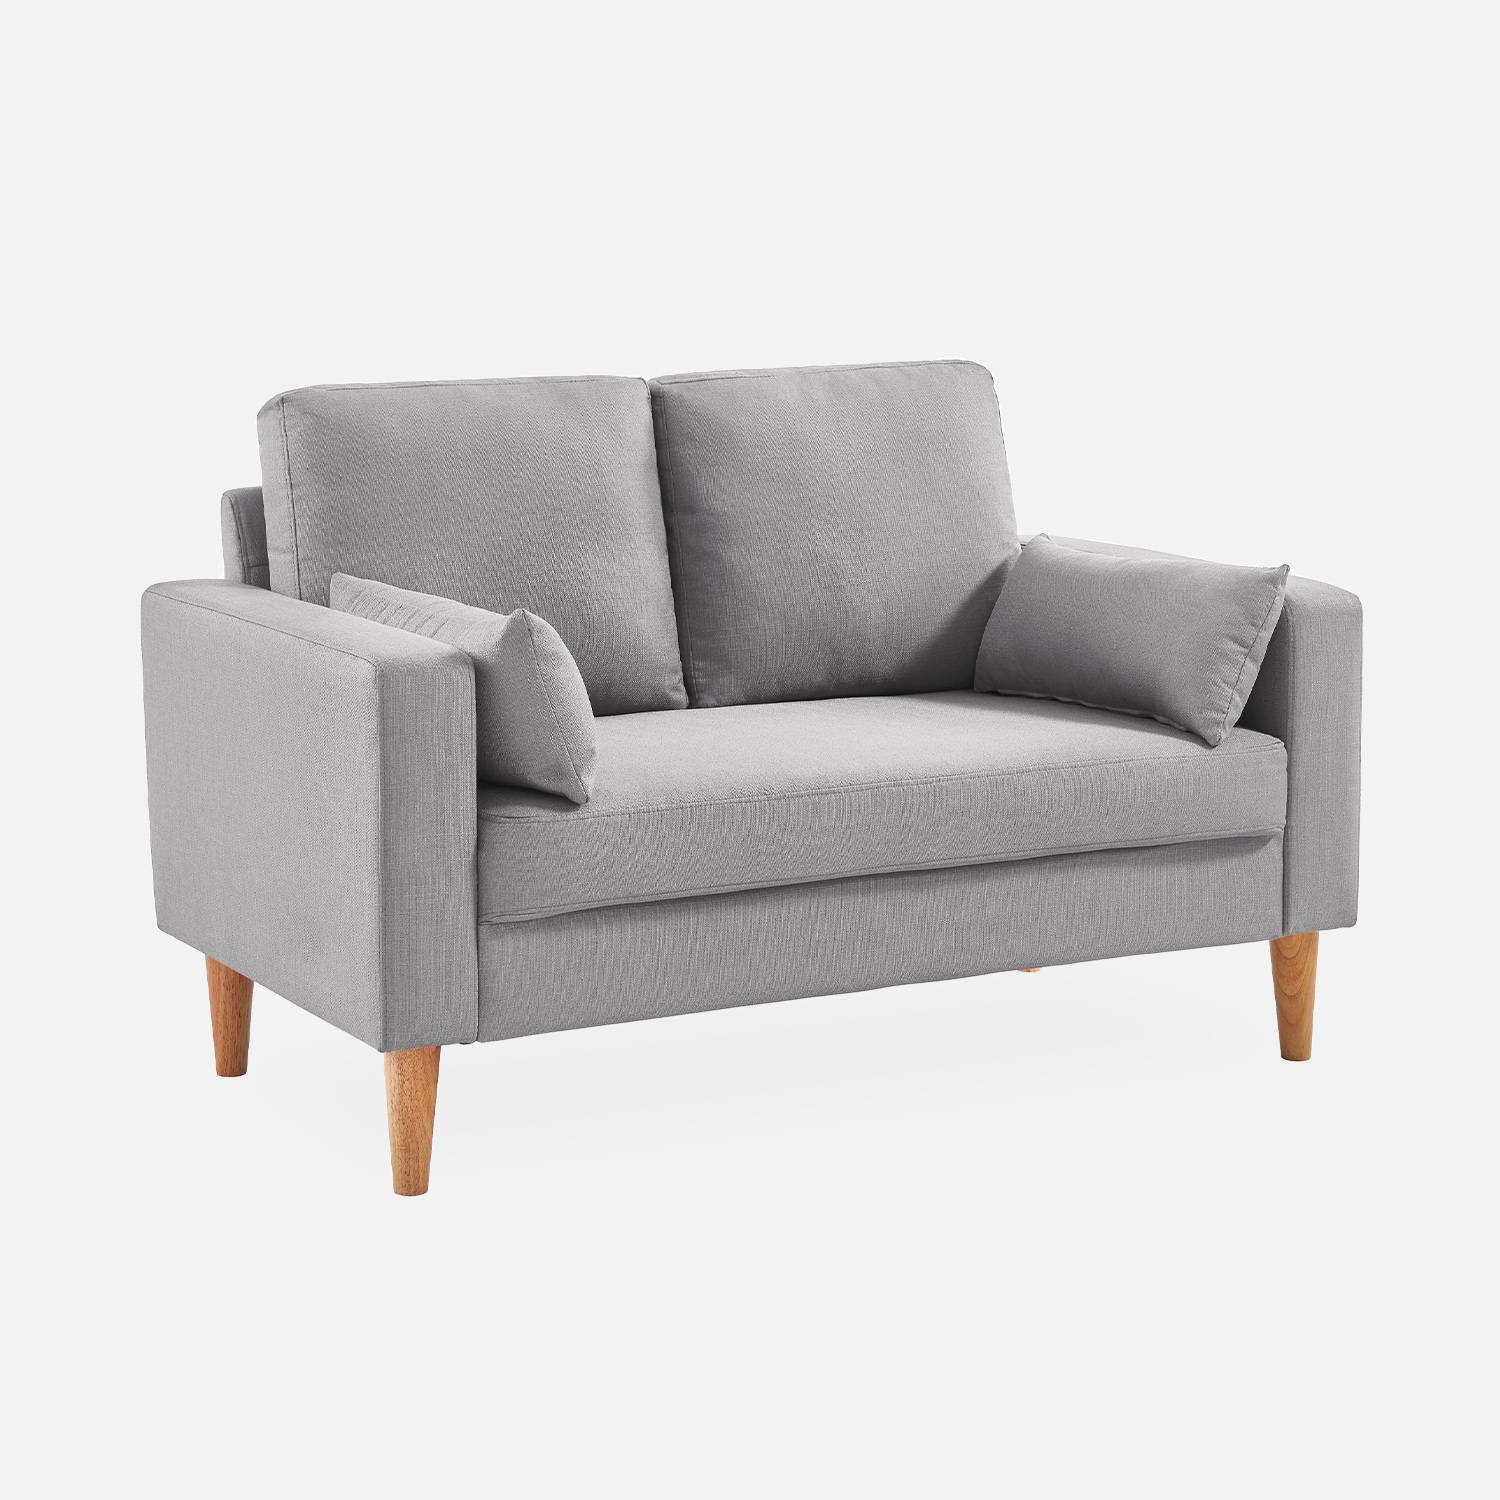 Stoffen tweezits sofa lichtgrijs  - Bjorn - 2-zits bank met houten poten, scandinavische stijl   Photo2